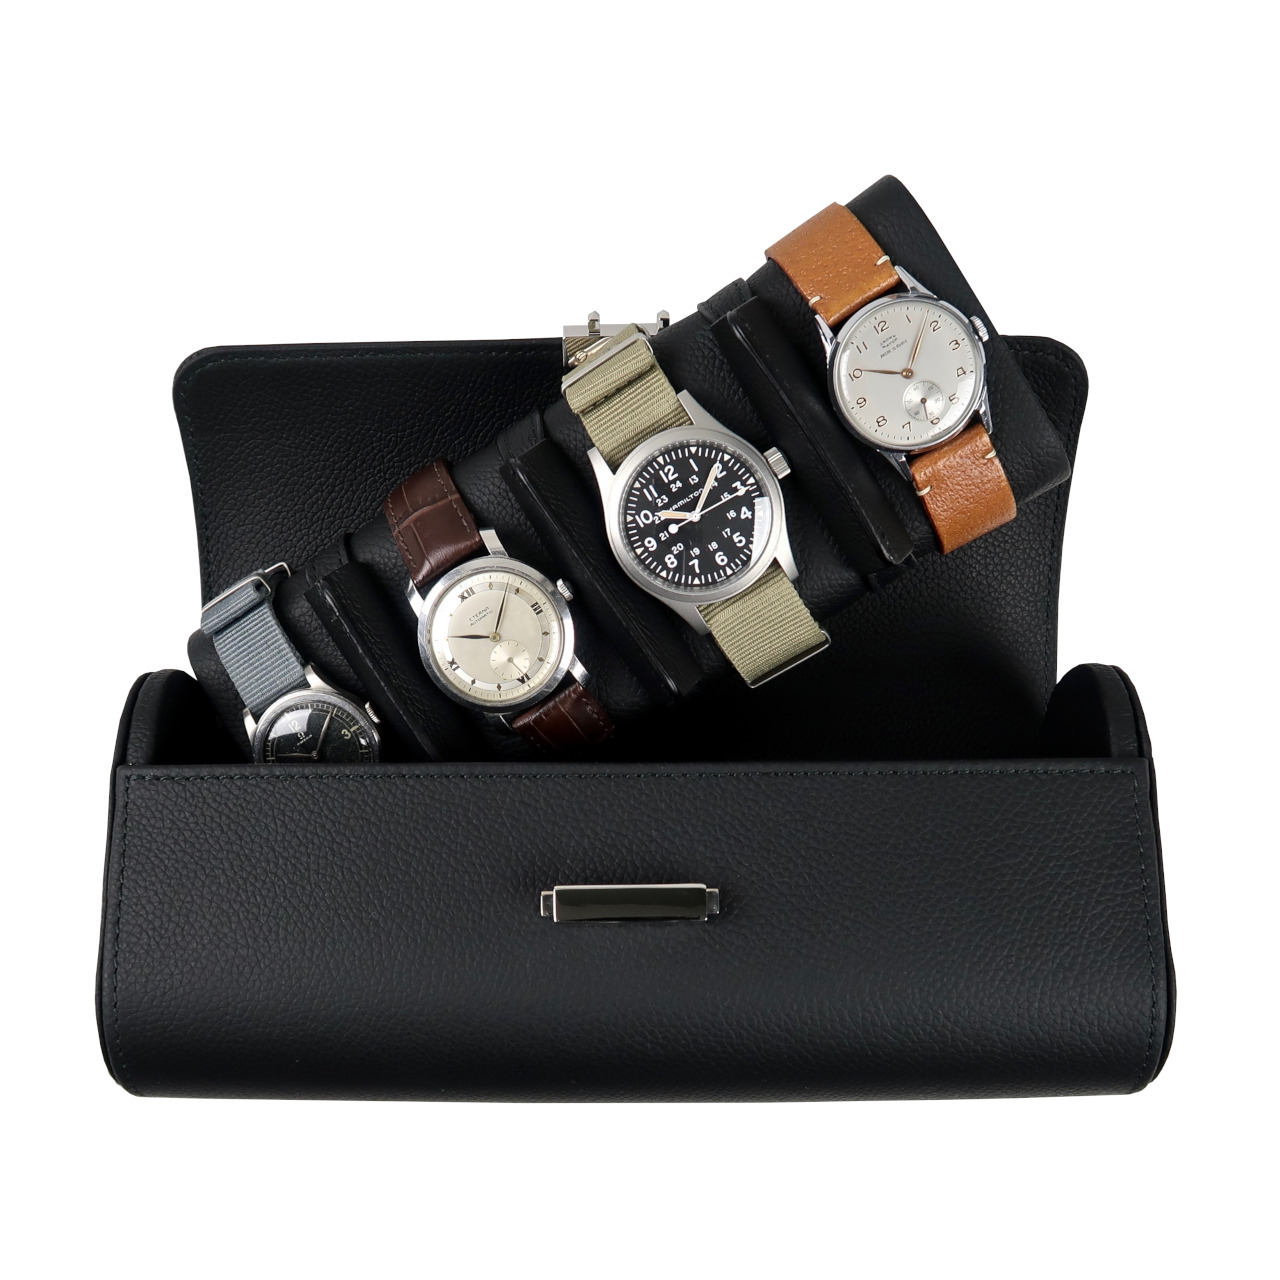 Scatola del Tempo Black Pochette Leather Travel Case for 4 Watches